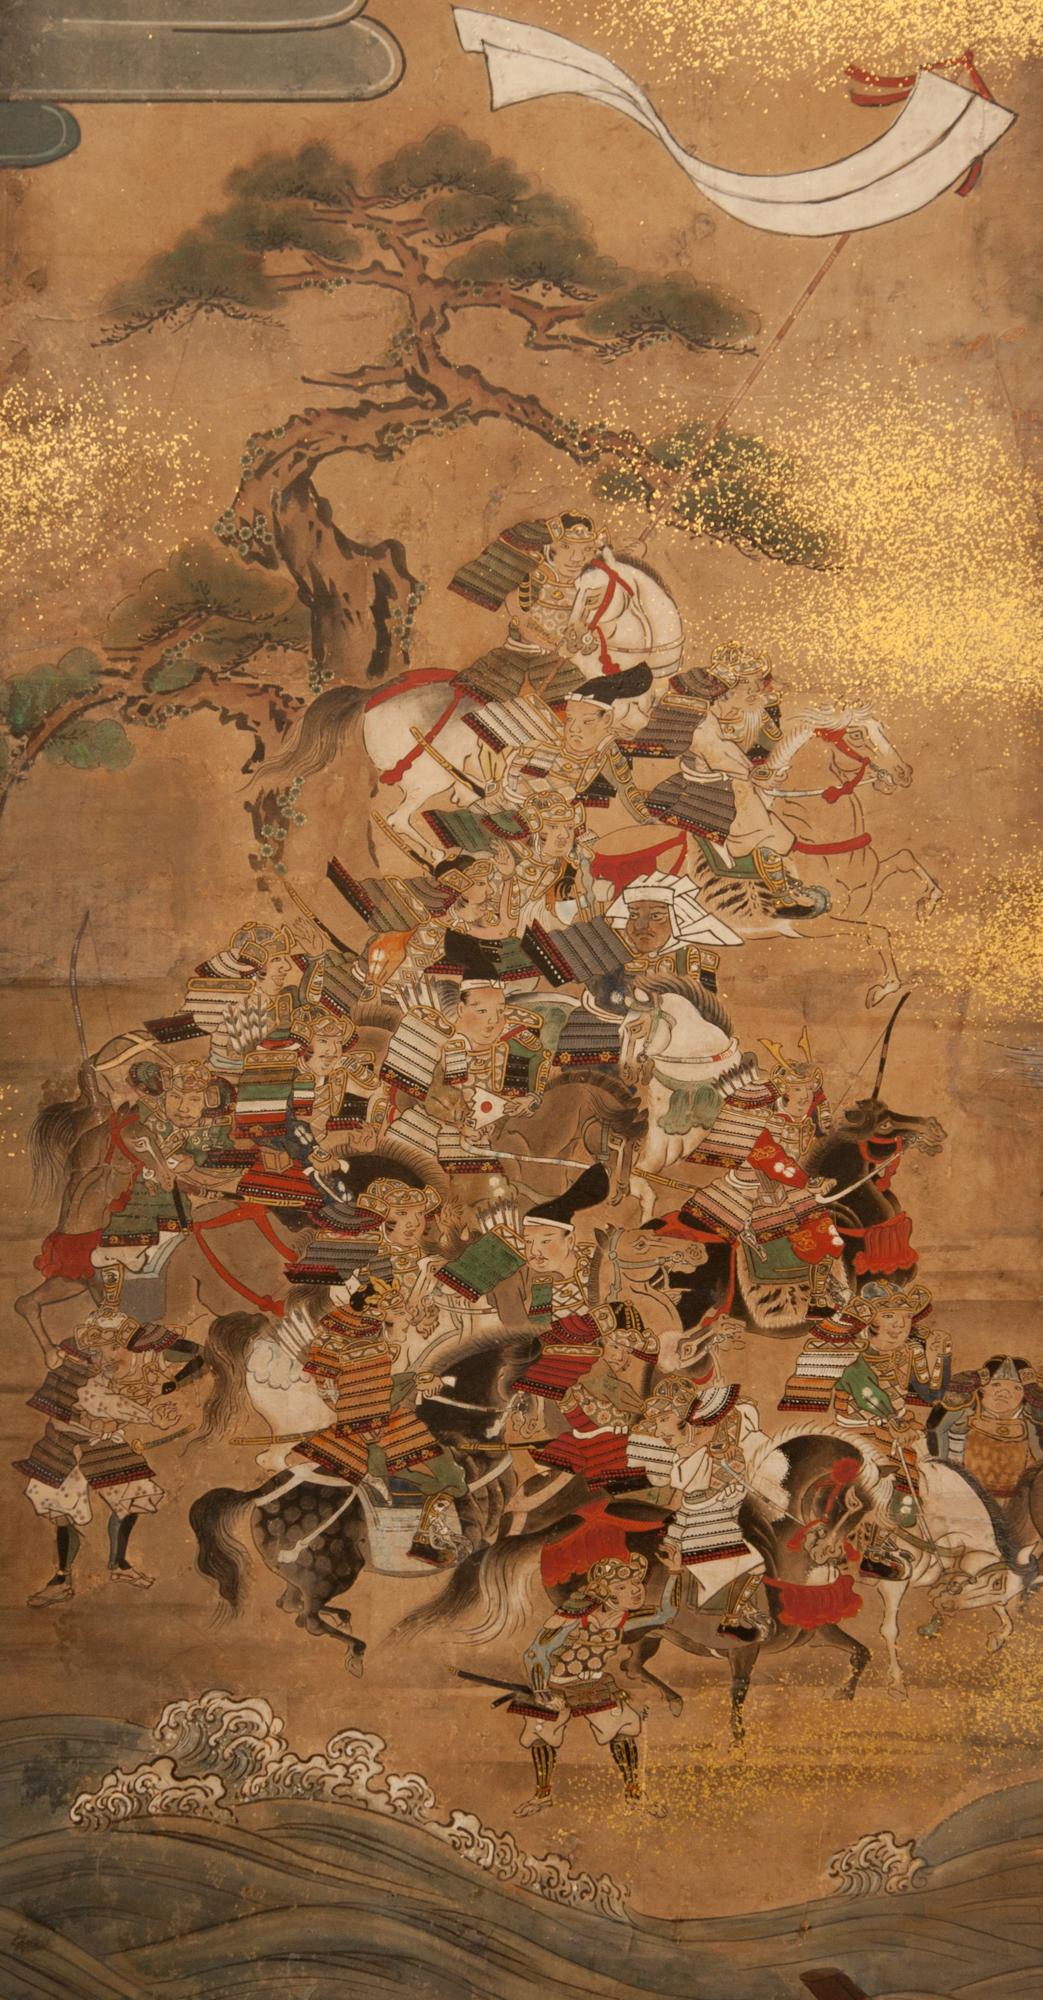 Peinture de Yamato-e représentant une grande bataille terrestre et maritime, la bataille de Yashima, le 22 mars 1185. Les Heike ont été chassés de la zone montagneuse et protégée de Dazaifu, et ont traversé la mer étroite jusqu'à Yashima